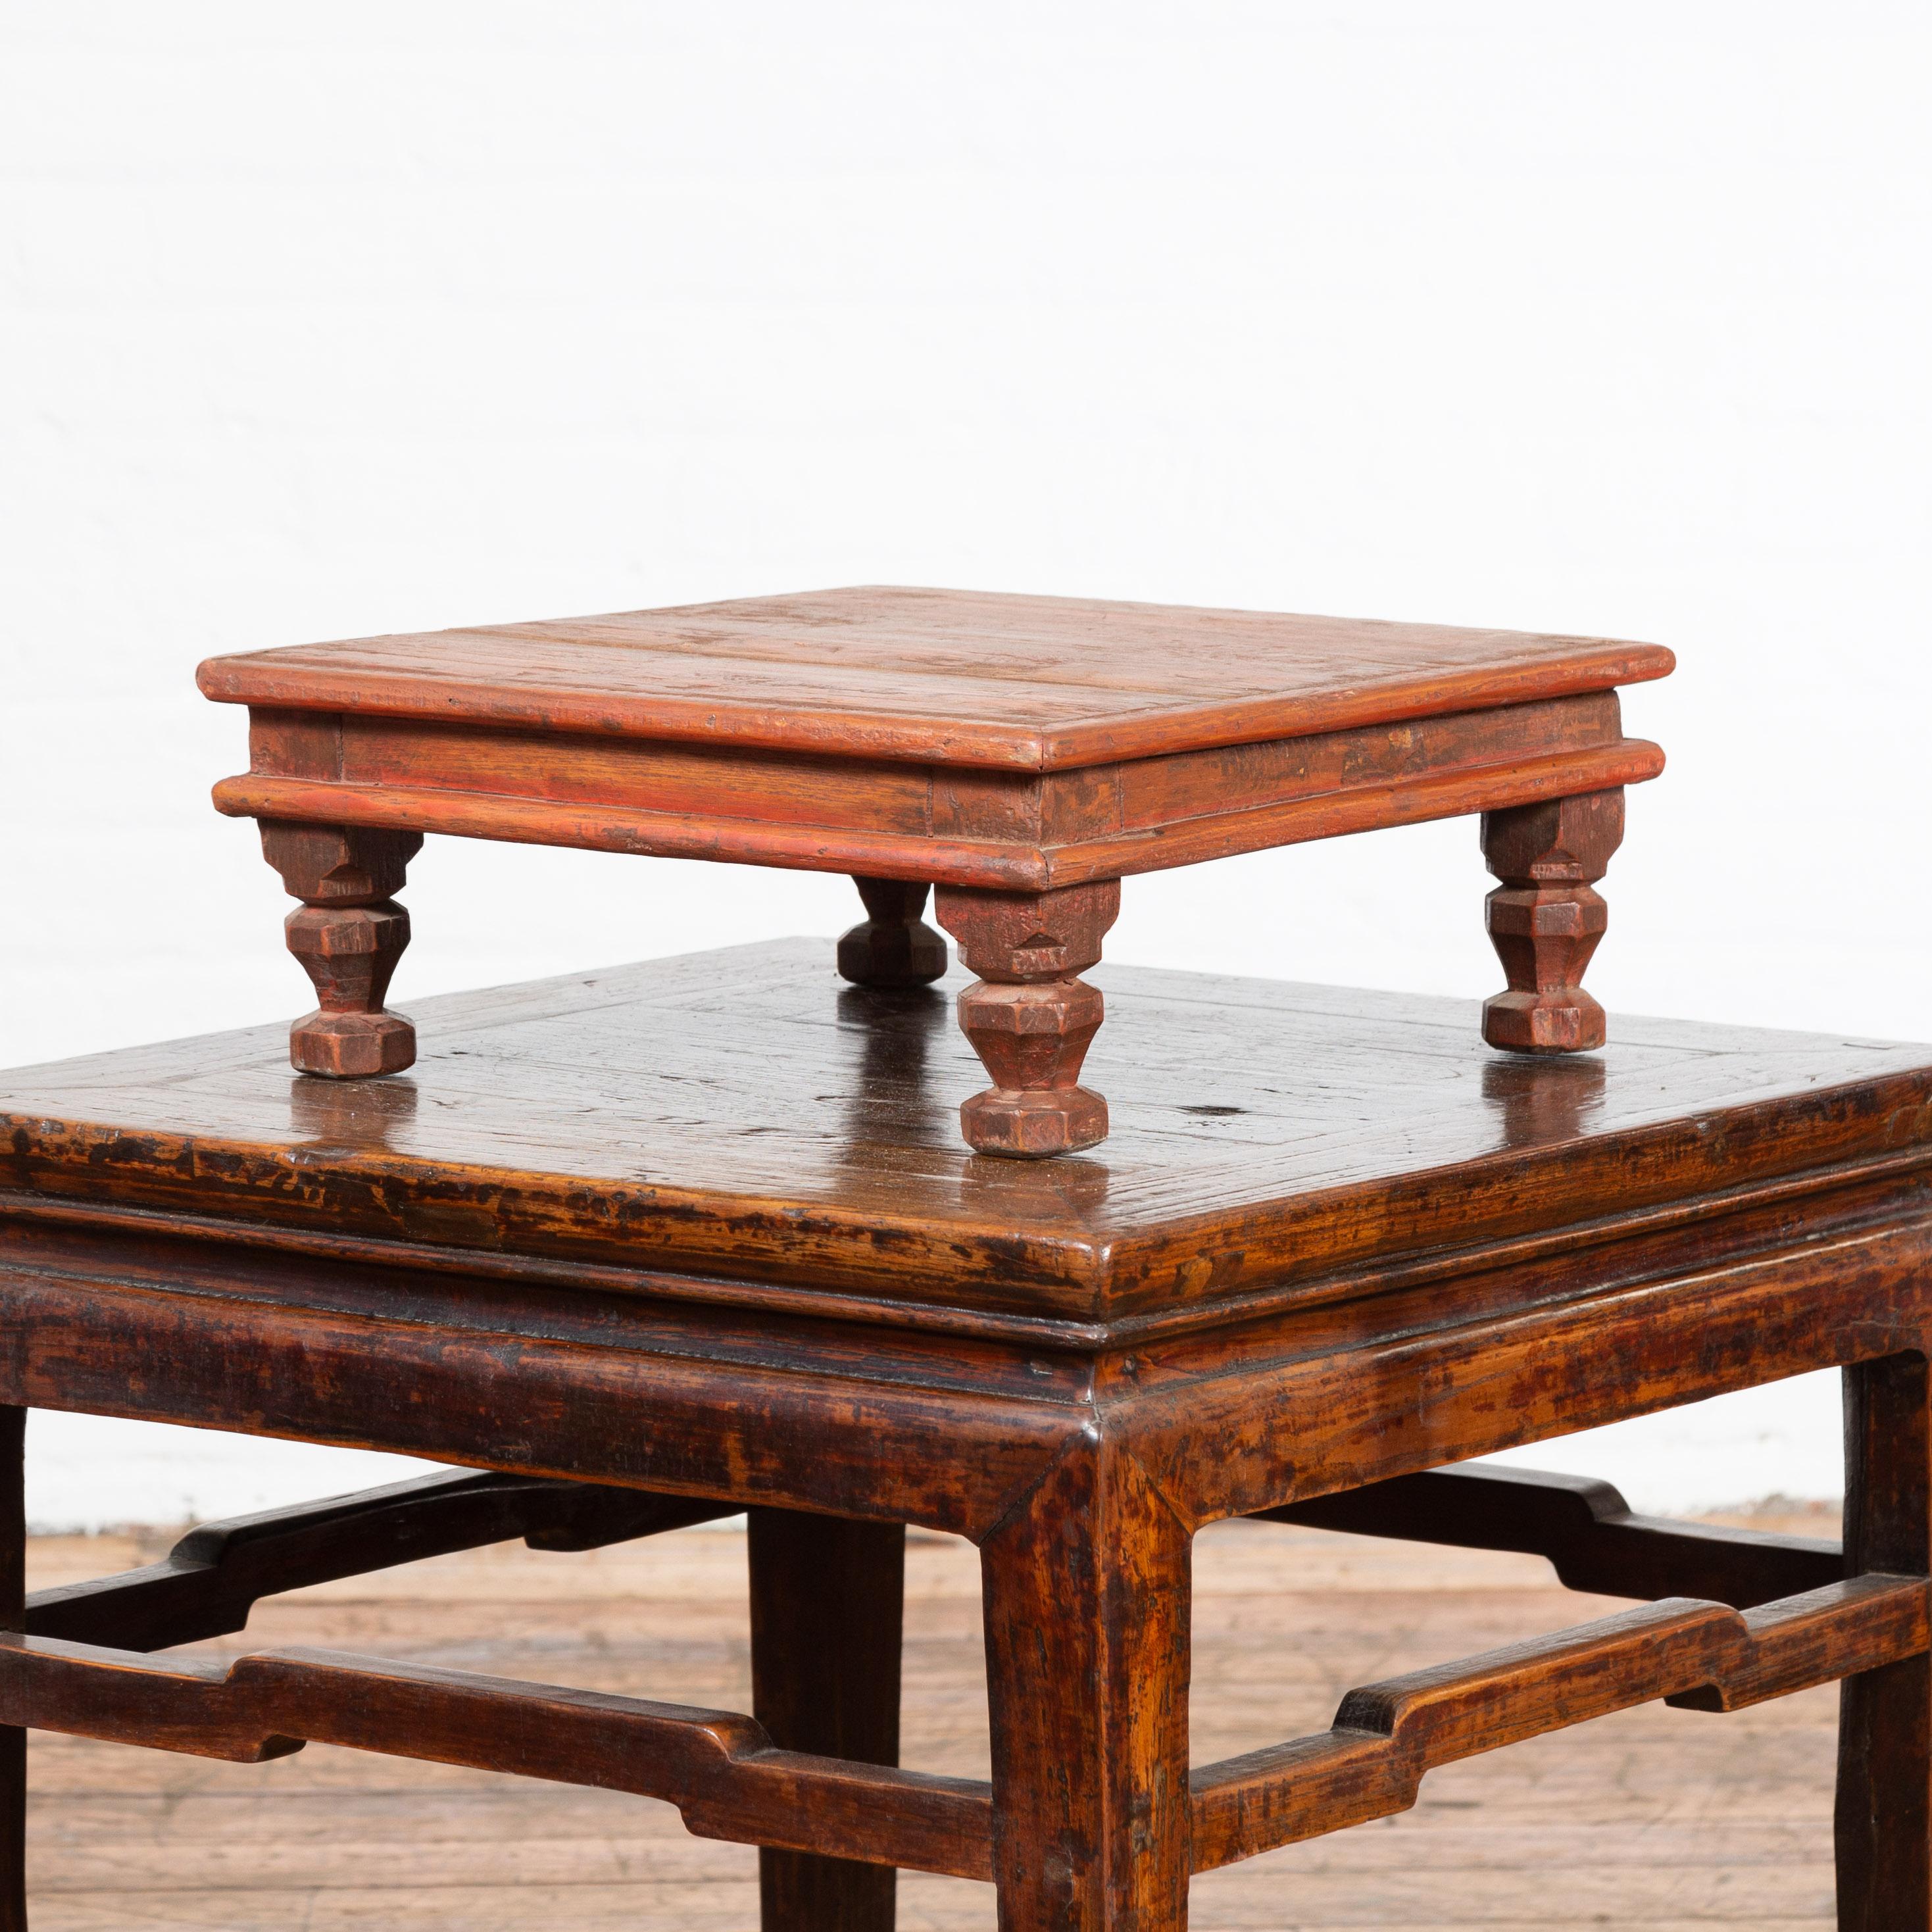 Table de prière basse en bois de style indien, datant du milieu du 20e siècle, avec des pieds sculptés. Créée en Inde au milieu du siècle dernier, cette table de prière vintage en bois présente un plateau carré en planches au-dessus d'un tablier en